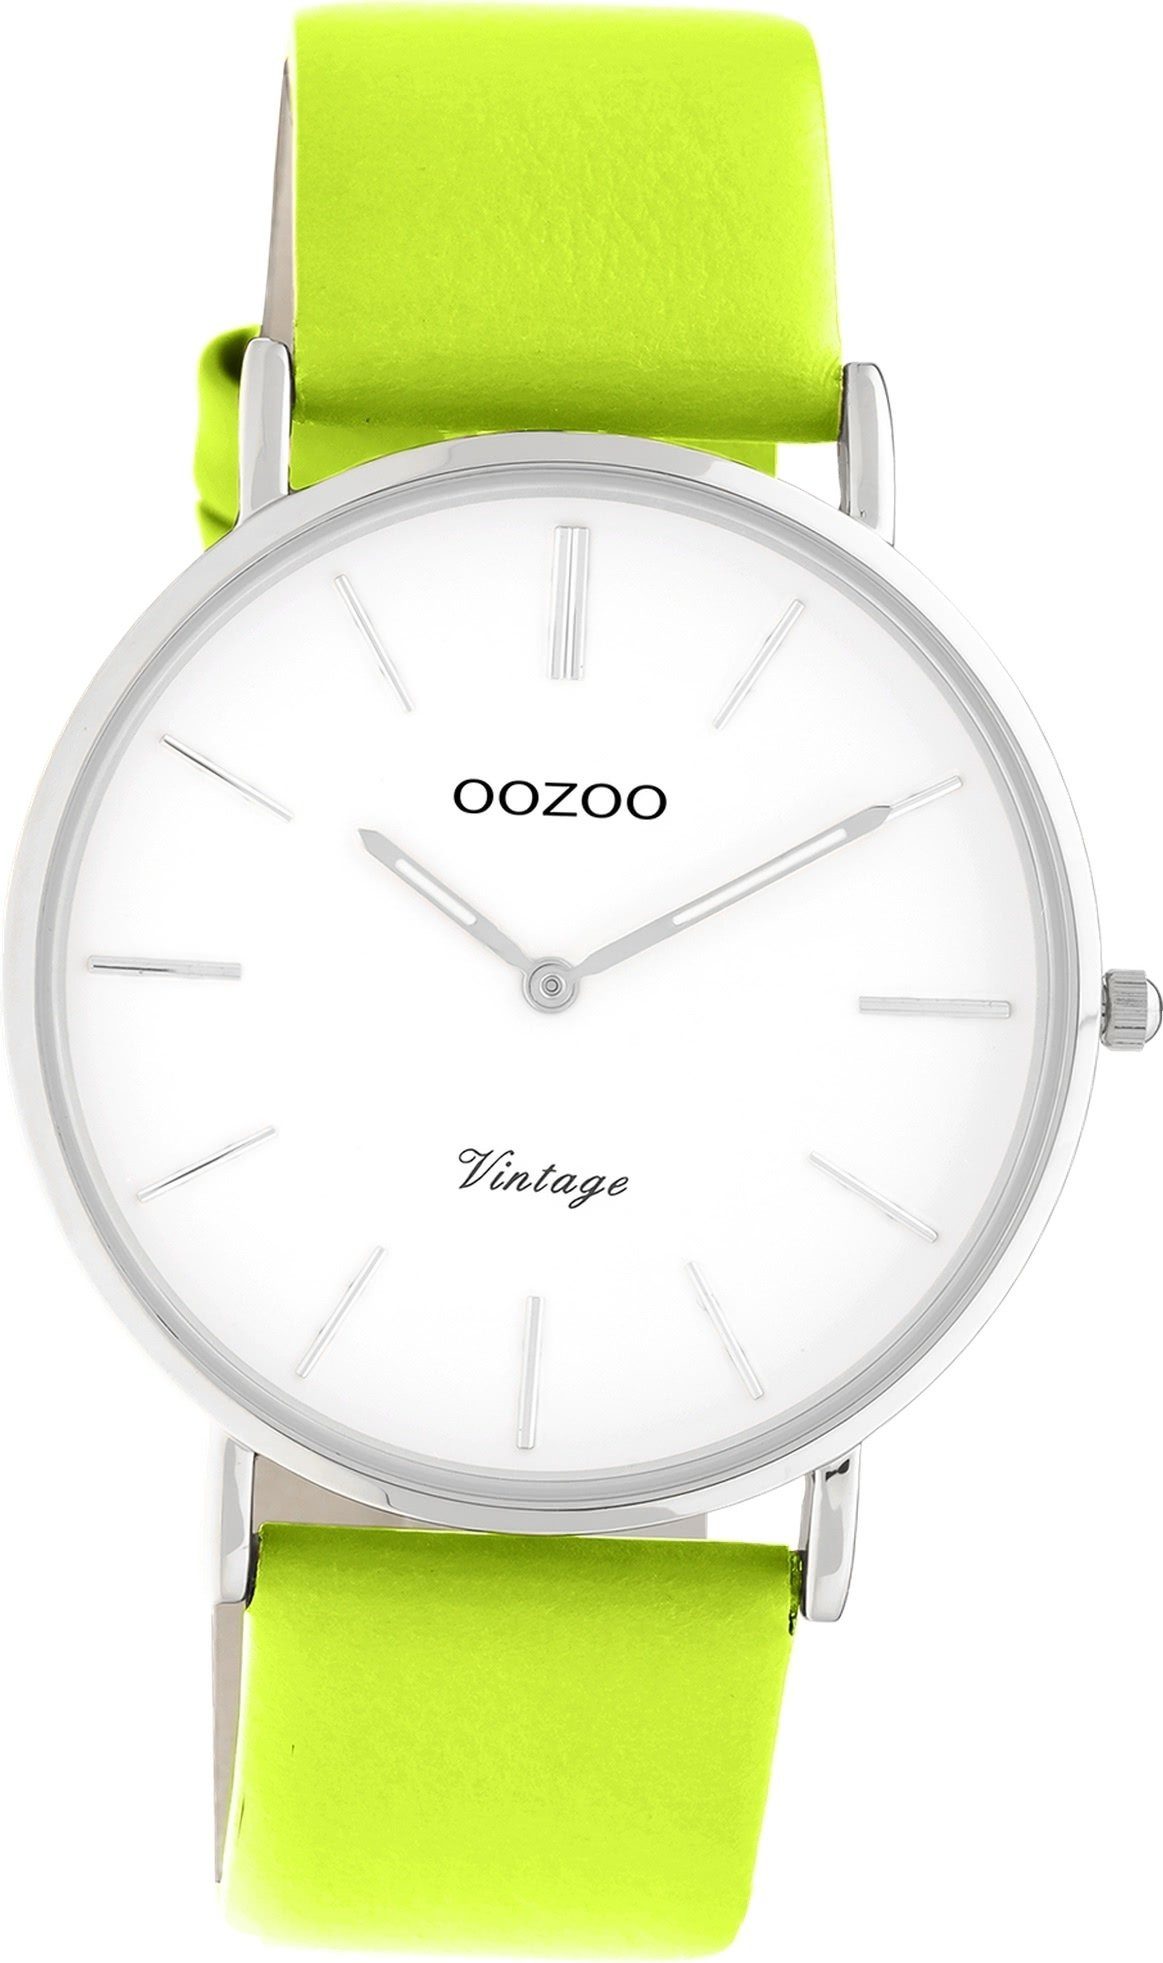 OOZOO Quarzuhr Oozoo Damen Armbanduhr Vintage Series, Damenuhr Lederarmband gelbgrün, rundes Gehäuse, groß (ca. 40mm)